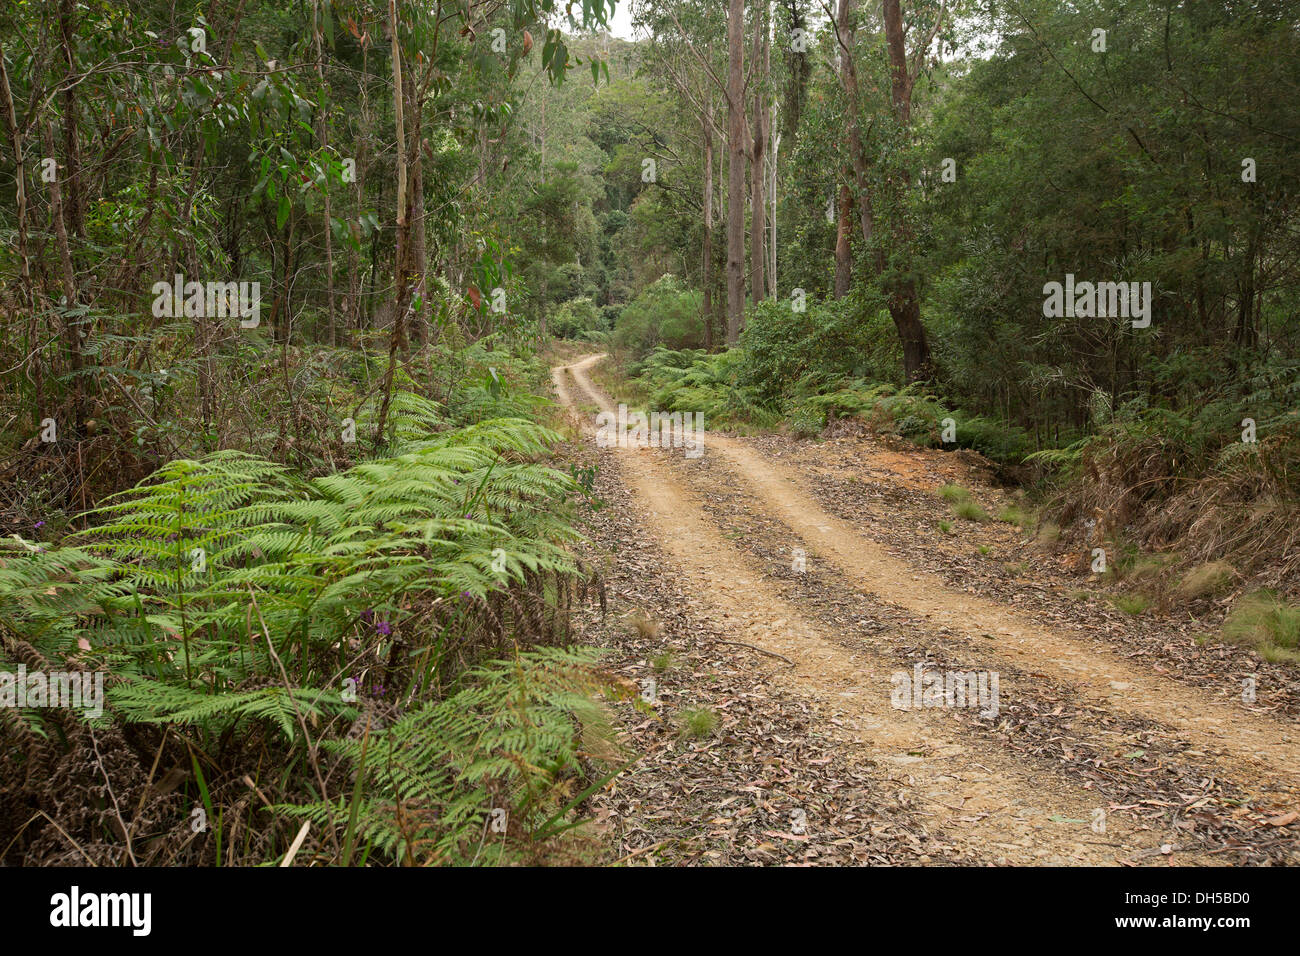 Paesaggio con carreggiata stretta infilzare attraverso fitte foreste con smeraldo felci arboree Nowendoc nel Parco Nazionale di NSW Australia Foto Stock